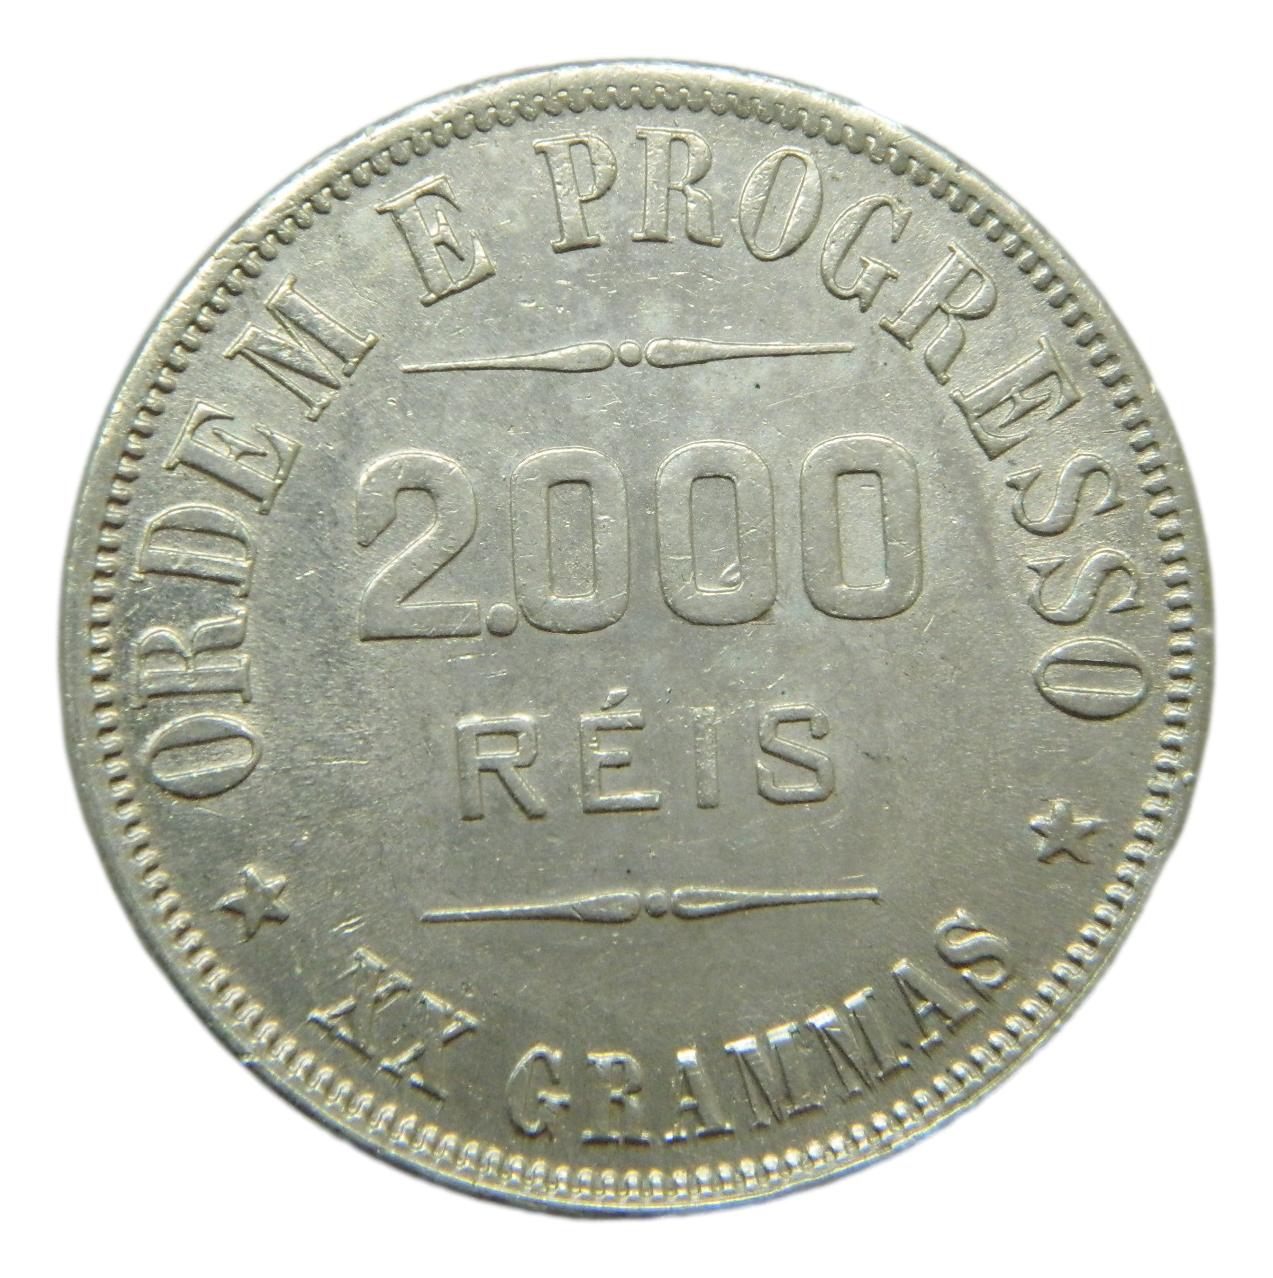 1907 - BRASIL - 2000 REIS - PLATA 